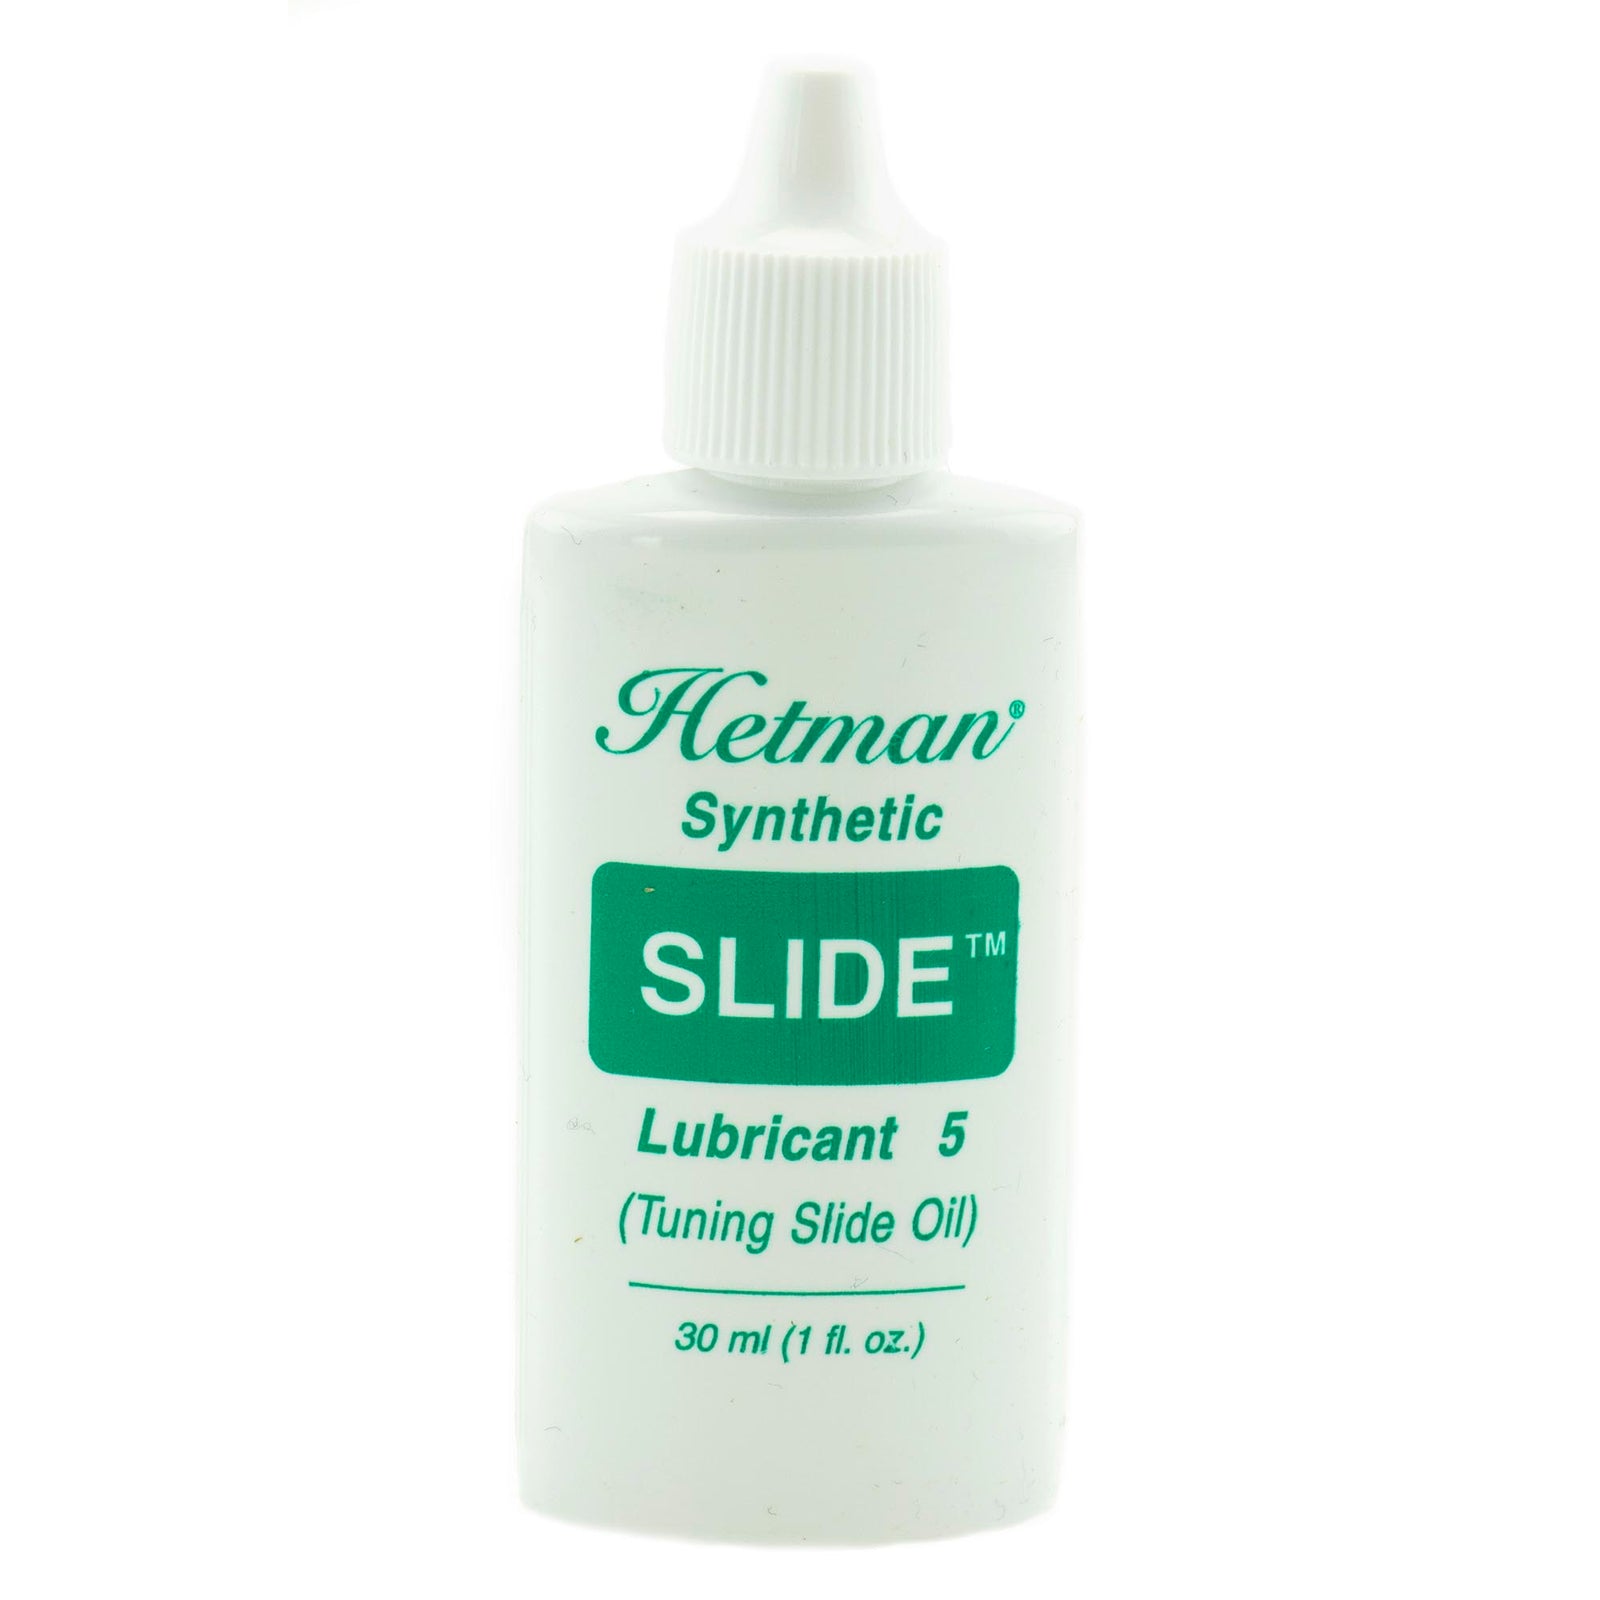 Hetman Slide Oil 30ml